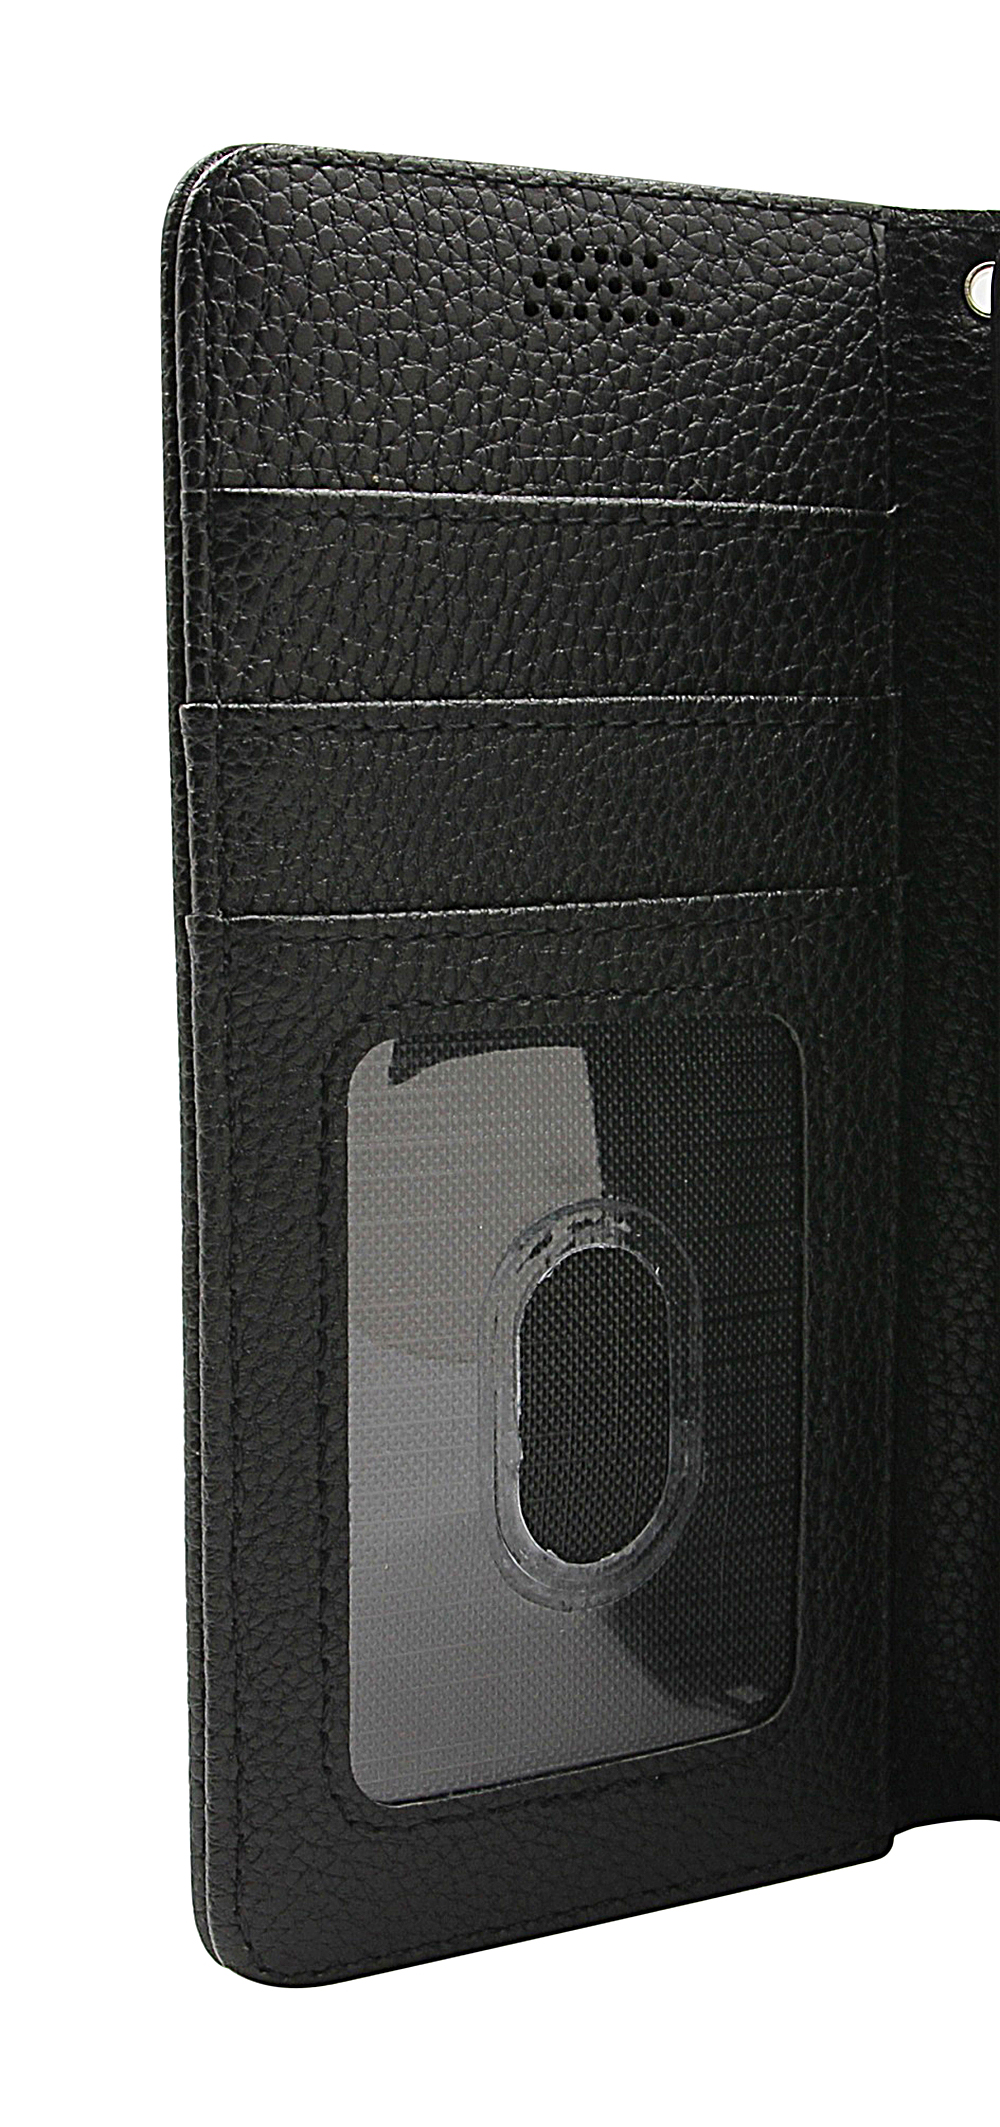 billigamobilskydd.seNew Standcase Wallet OnePlus Nord N100